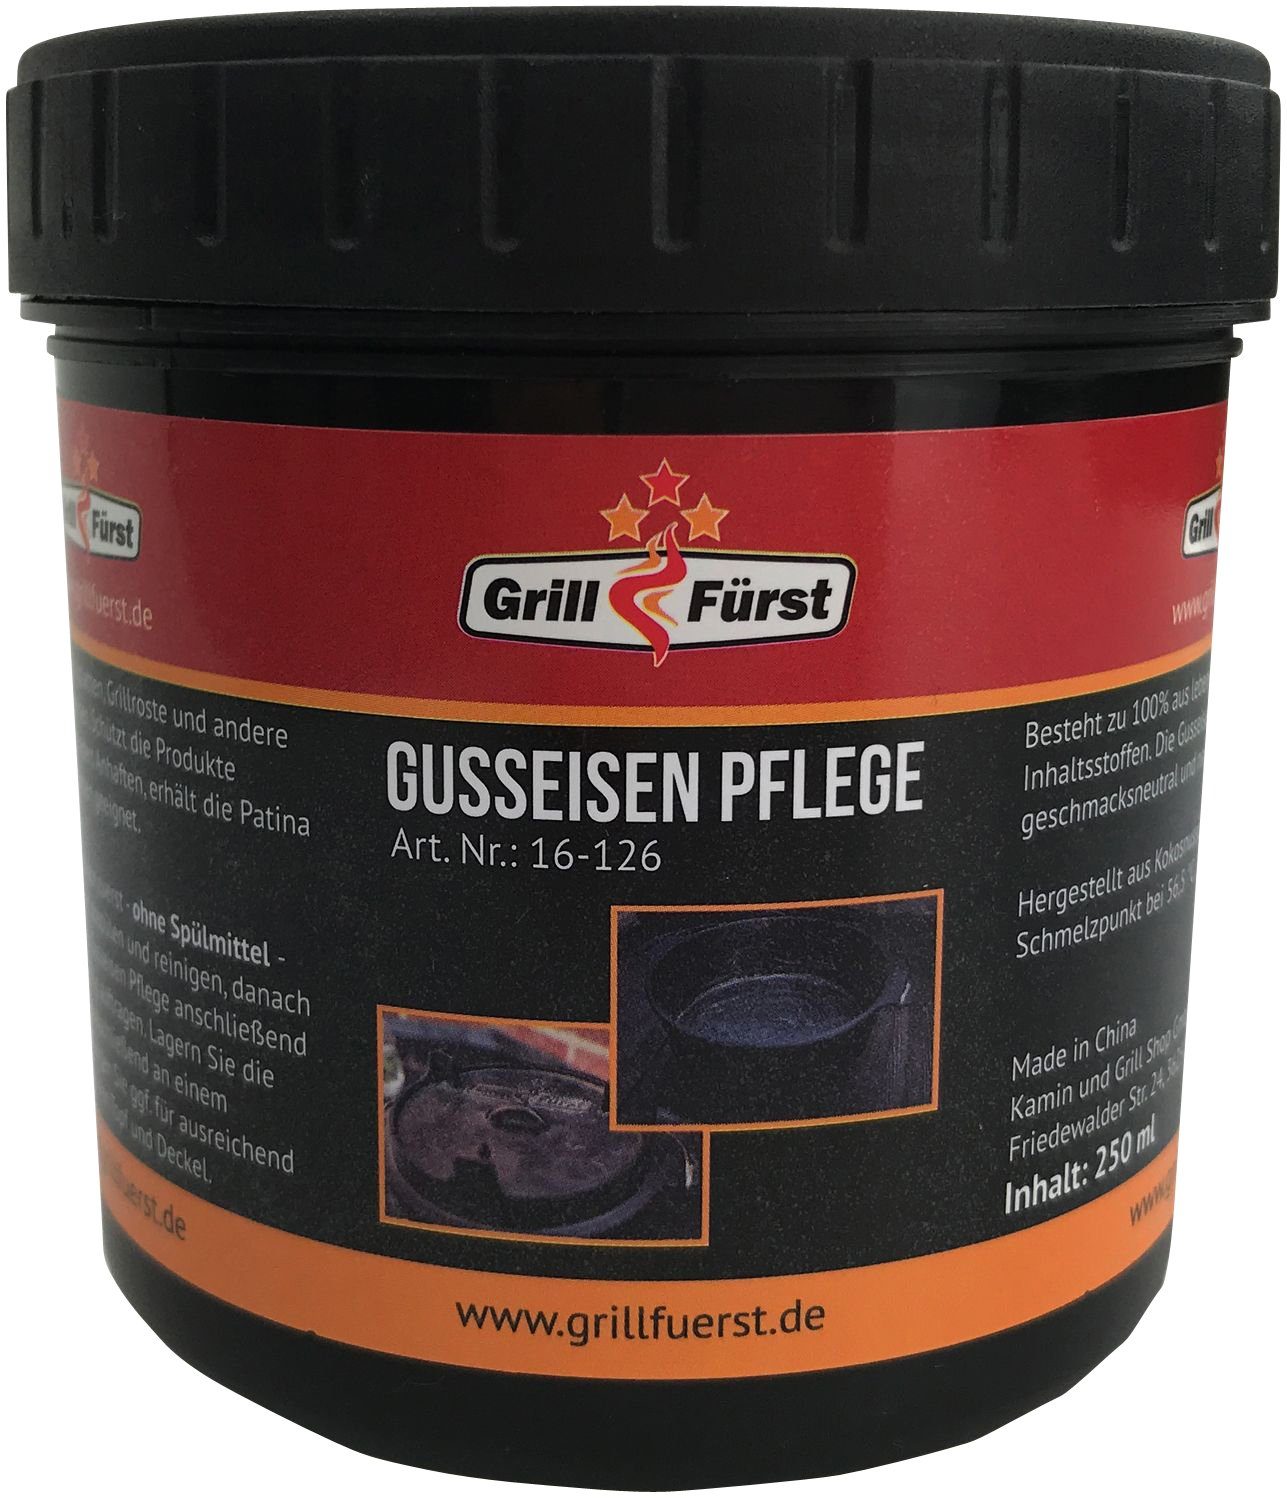 inkl. Gusseisen Tragetasche, X-DEAL DO6 Grillfürst Bratentopf BBQ Oven und Edition Deckelheber Dutch Grillfürst Pflege -